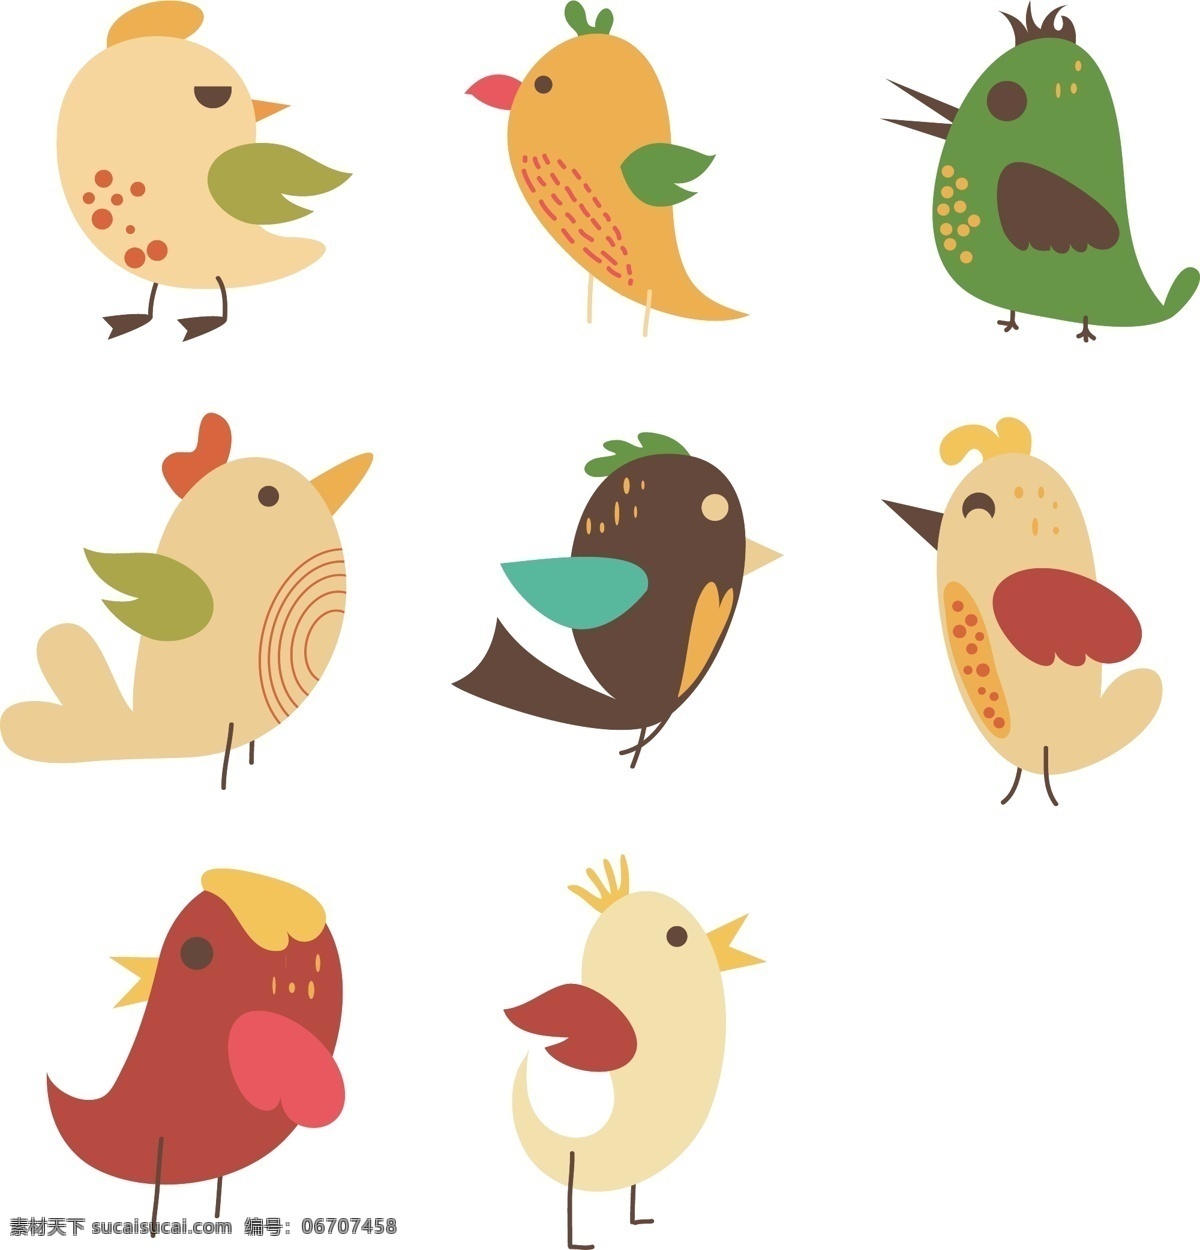 卡通 小鸟 可爱 元素 卡通小鸟 可爱小鸟 卡通动物 创意动物 装饰图案 动物图案 小鸟图案